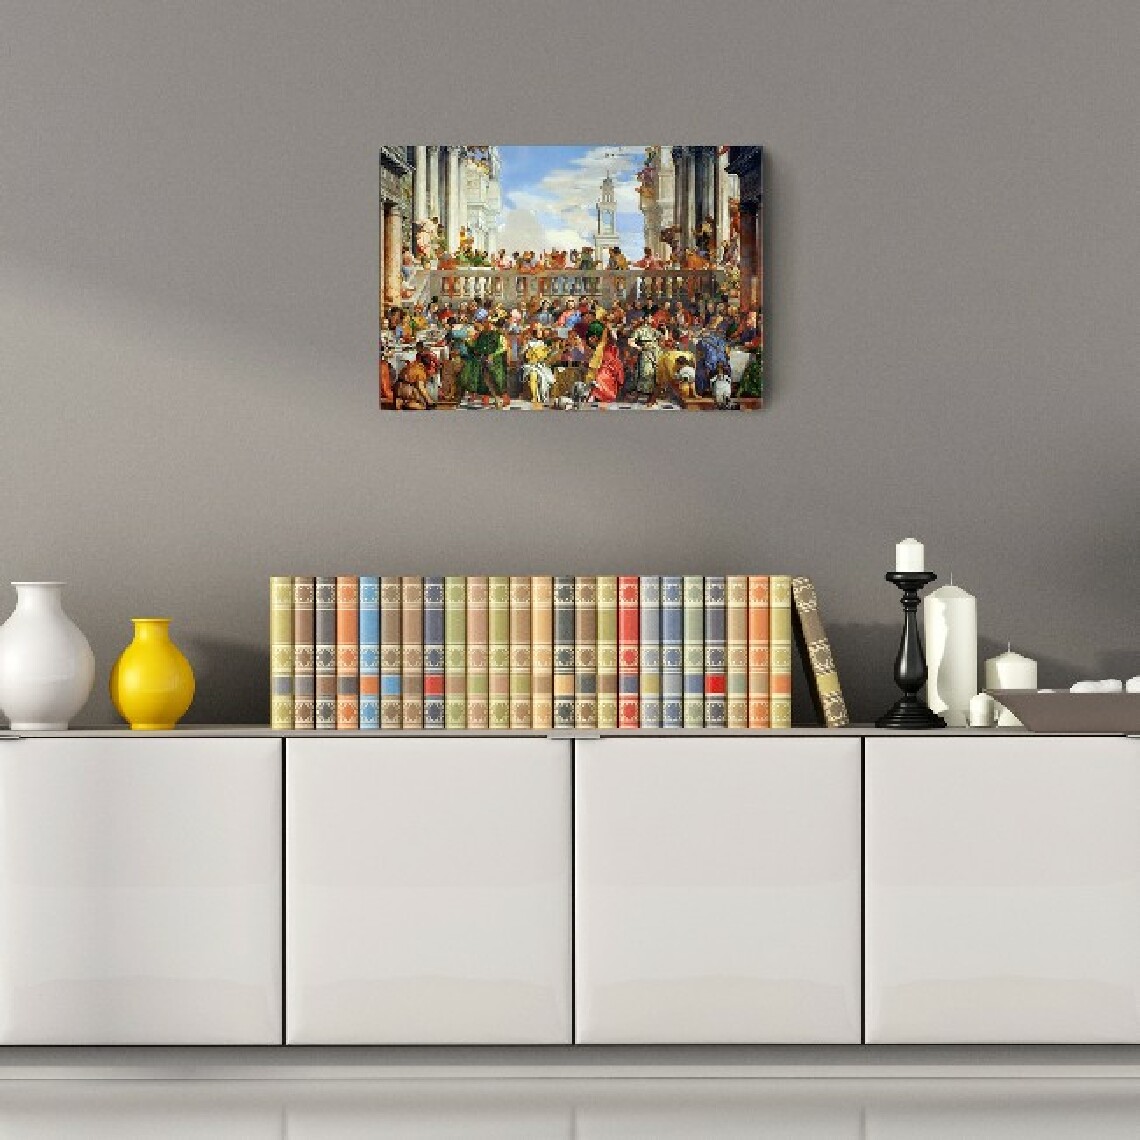 Homemania - HOMEMANIA Quadro Inspirations de l'auteur - Paolo Veronese, Mariage à Cana - Art et graffiti - pour le salon, la chambre à coucher - Multicolore en Polyester, MDF, 60 x 4 x 90 cm - Tableaux, peintures